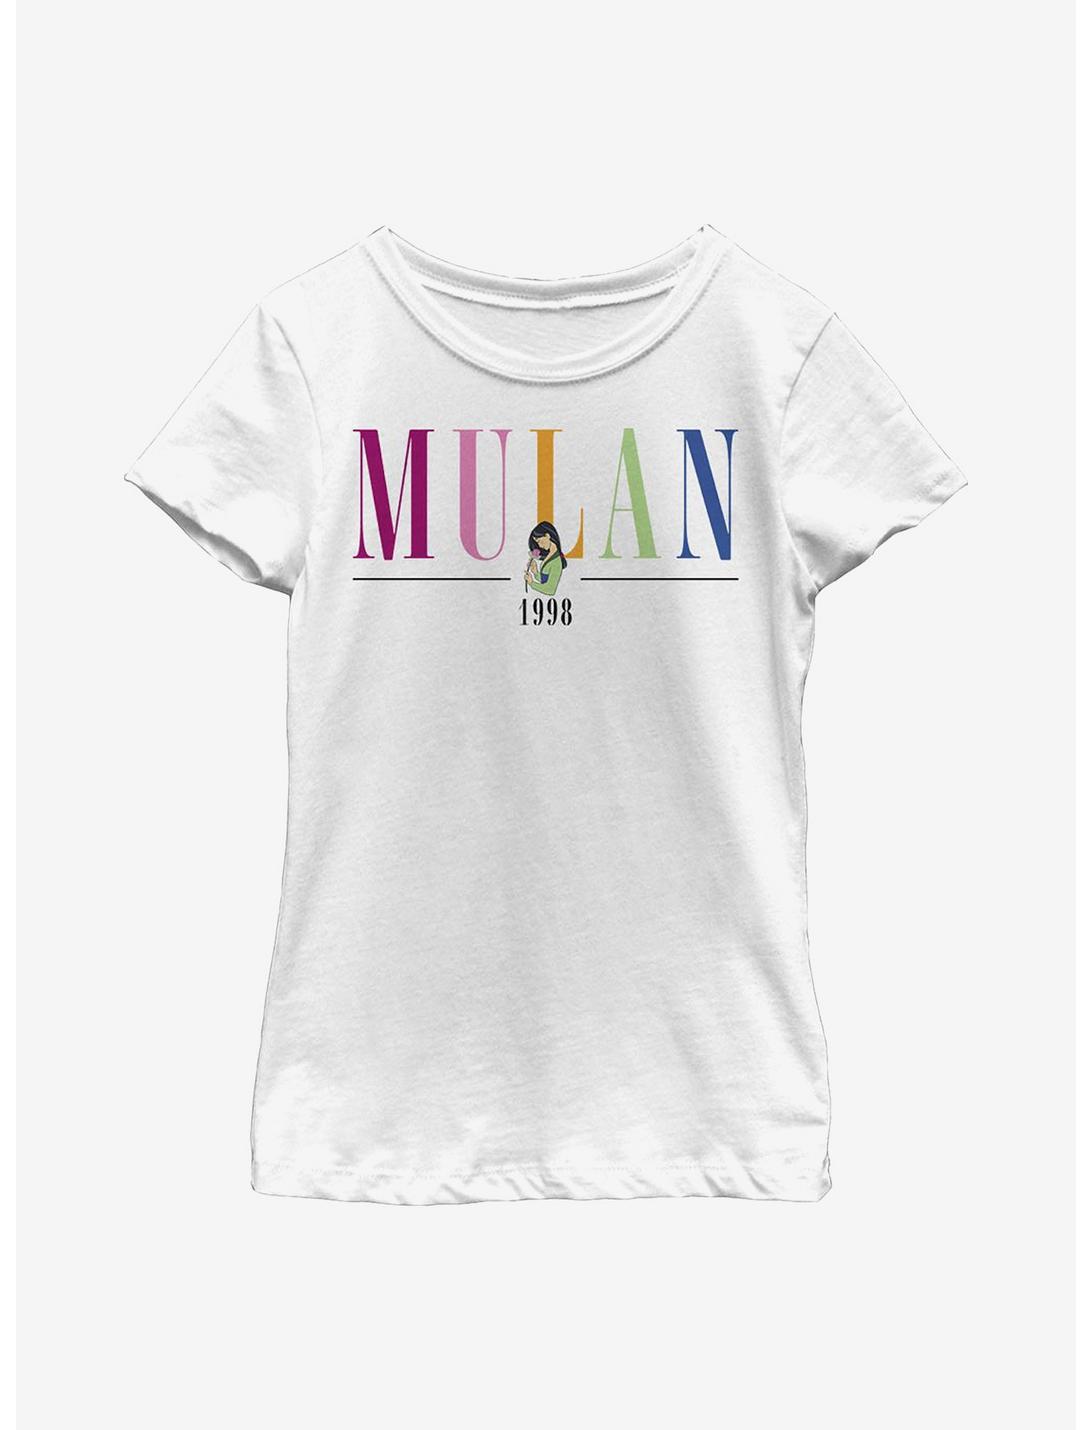 Disney Mulan Title Youth Girls T-Shirt, WHITE, hi-res